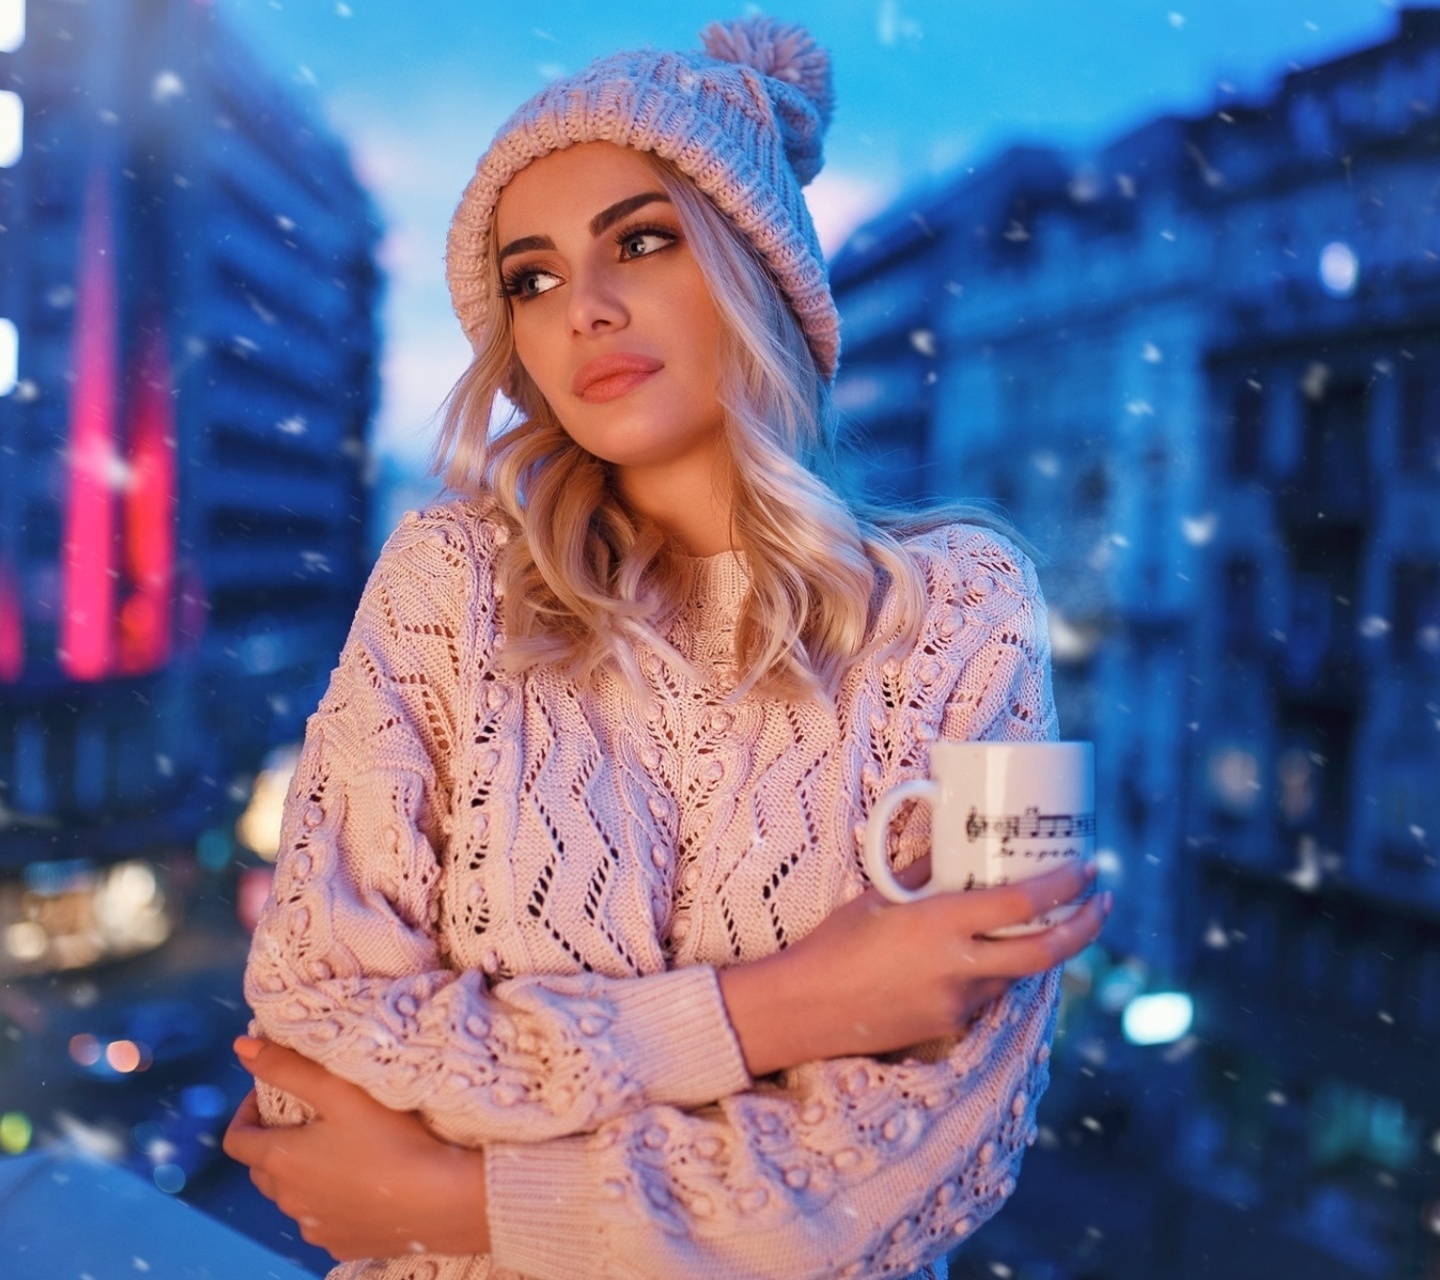 Winter stylish woman screenshot #1 1440x1280